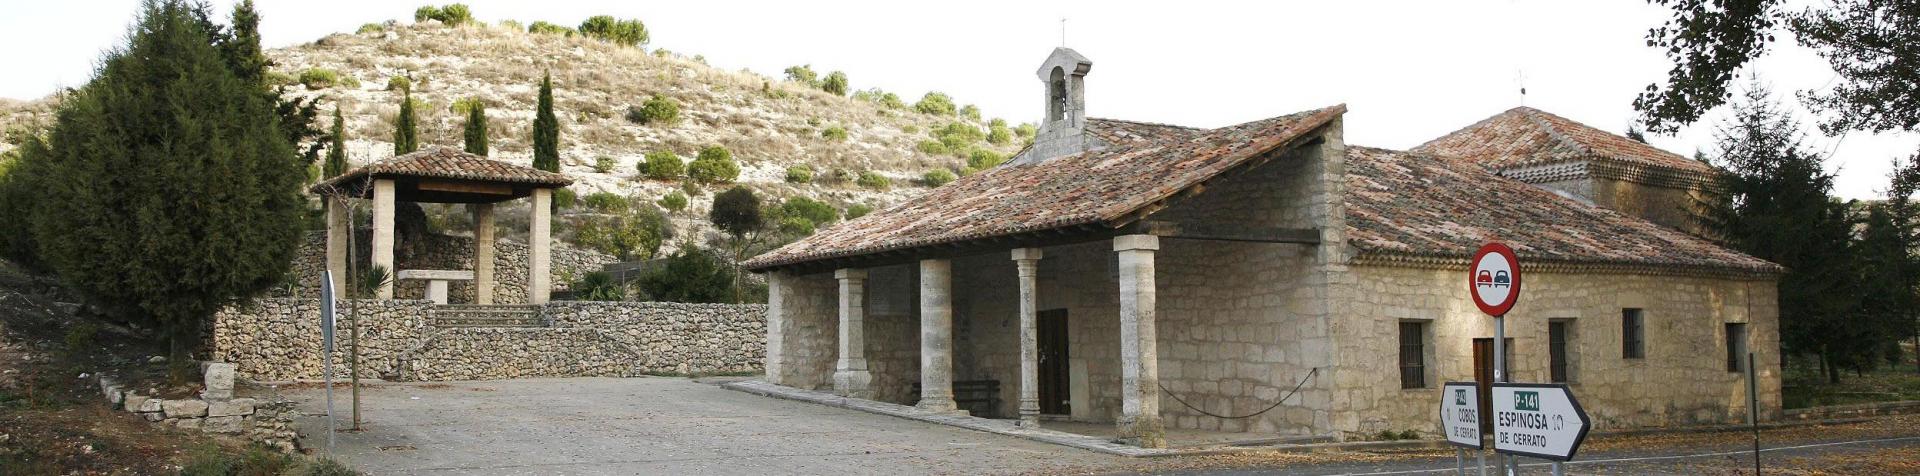 Ermita de Nuestra Señora de Garón, Antigüedad 